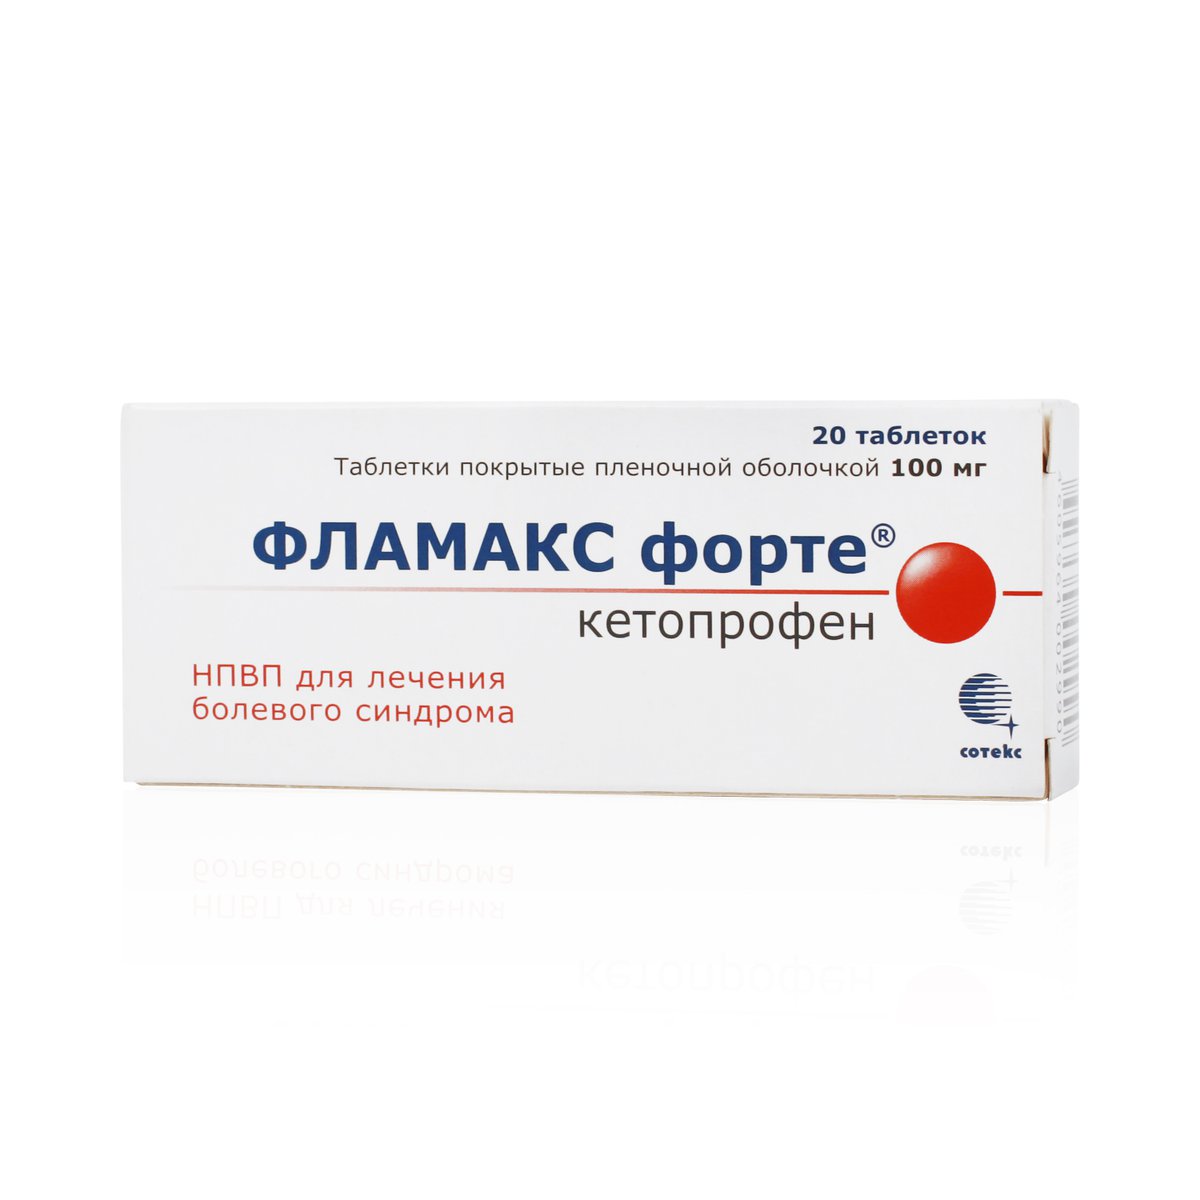 Фламакс форте (таблетки, 20 шт, 100 мг) - цена,  онлайн  .